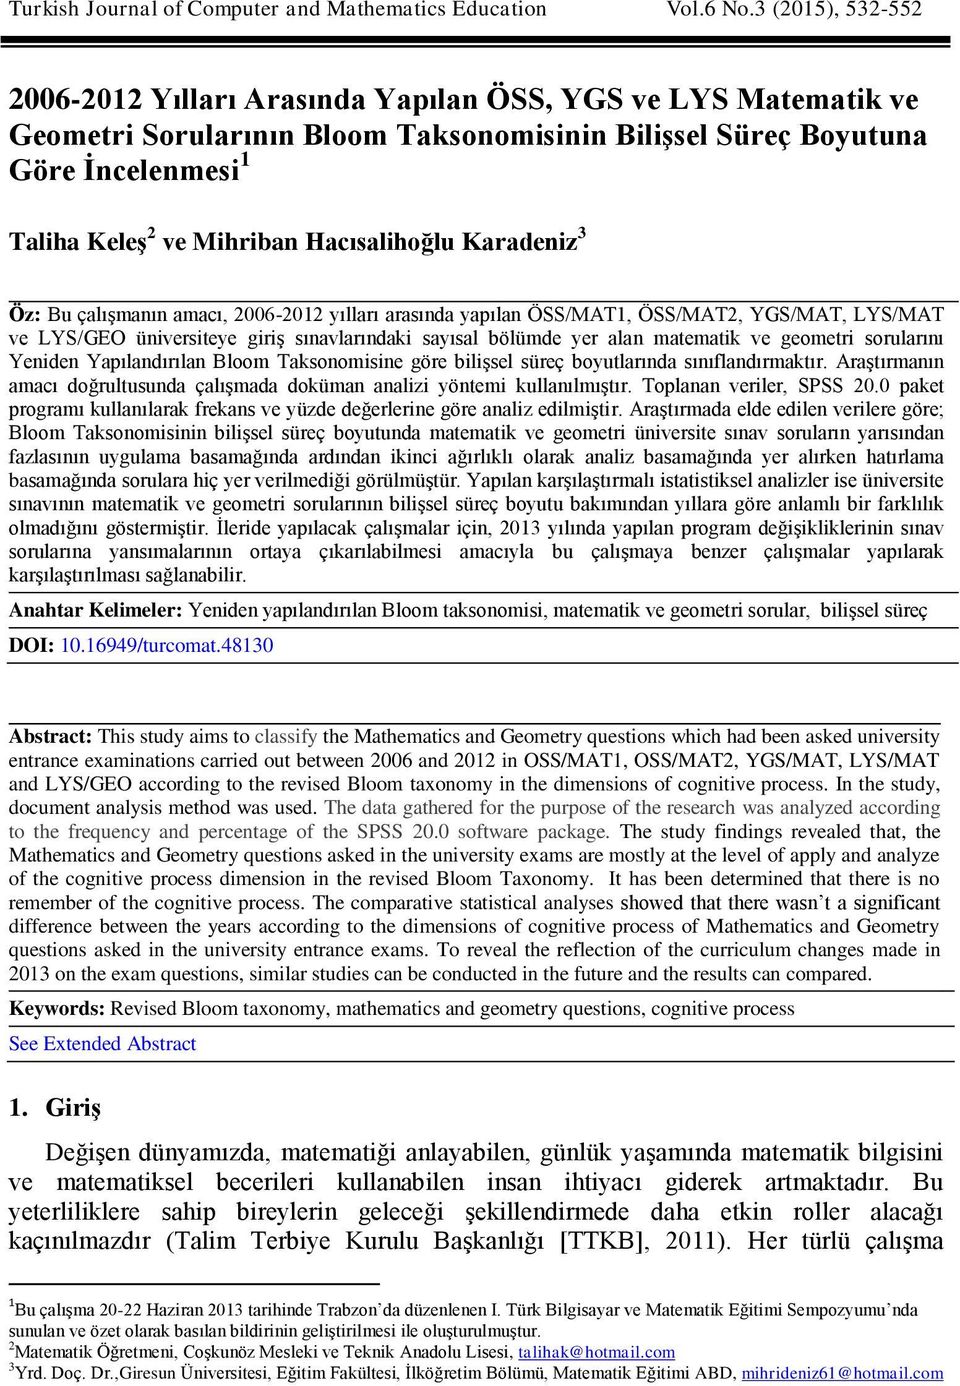 Hacısalihoğlu Karadeniz 3 Öz: Bu çalışmanın amacı, 2006-2012 yılları arasında yapılan ÖSS/MAT1, ÖSS/MAT2, YGS/MAT, LYS/MAT ve LYS/GEO üniversiteye giriş sınavlarındaki sayısal bölümde yer alan